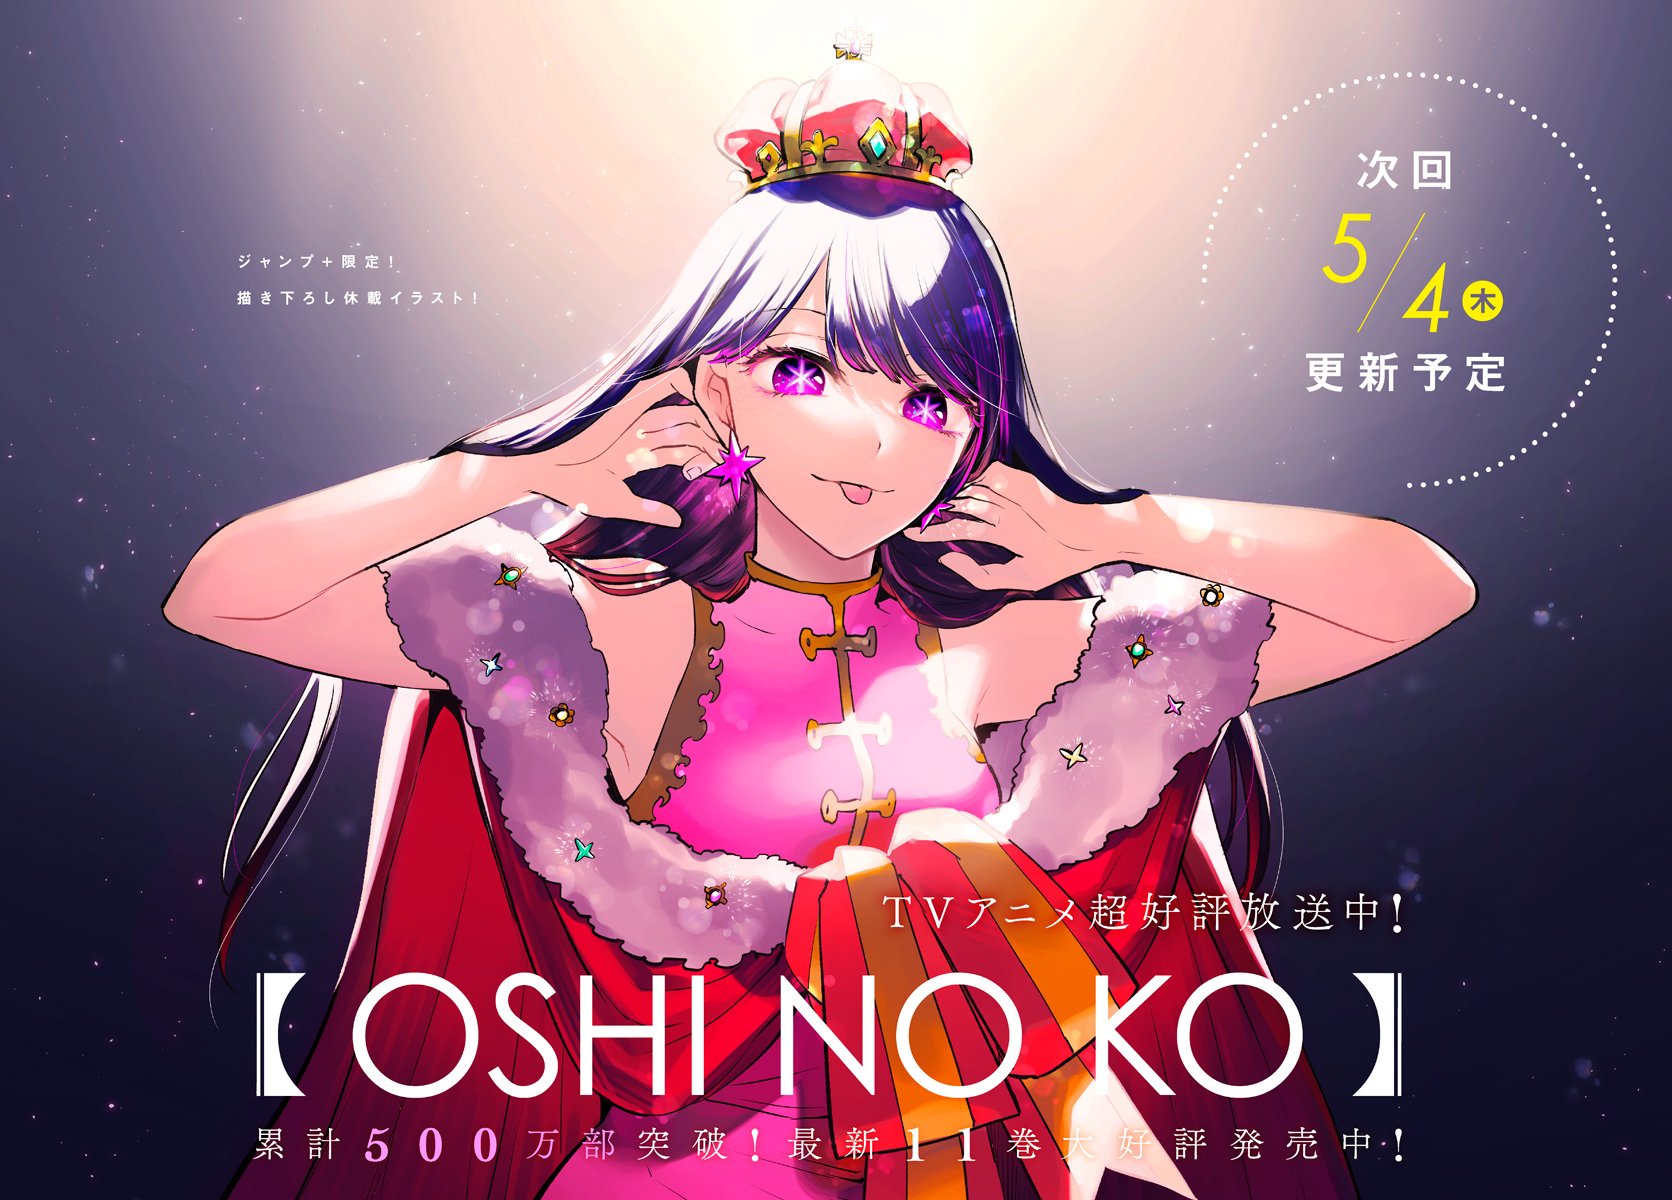 Anime News And Facts on X: New Oshi no Ko anime visual   / X